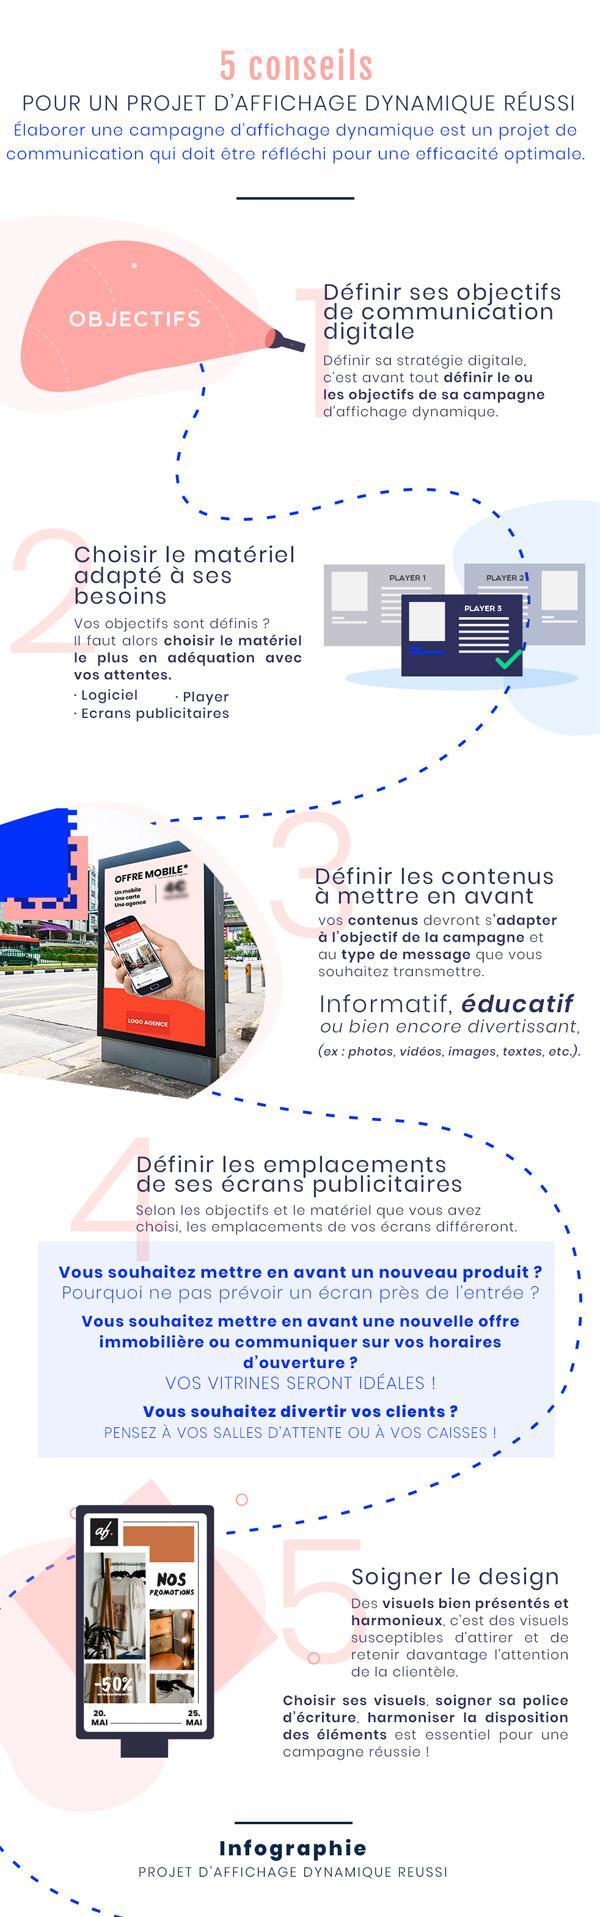 infographie conseils reussir projet affichage dynamique France Advert